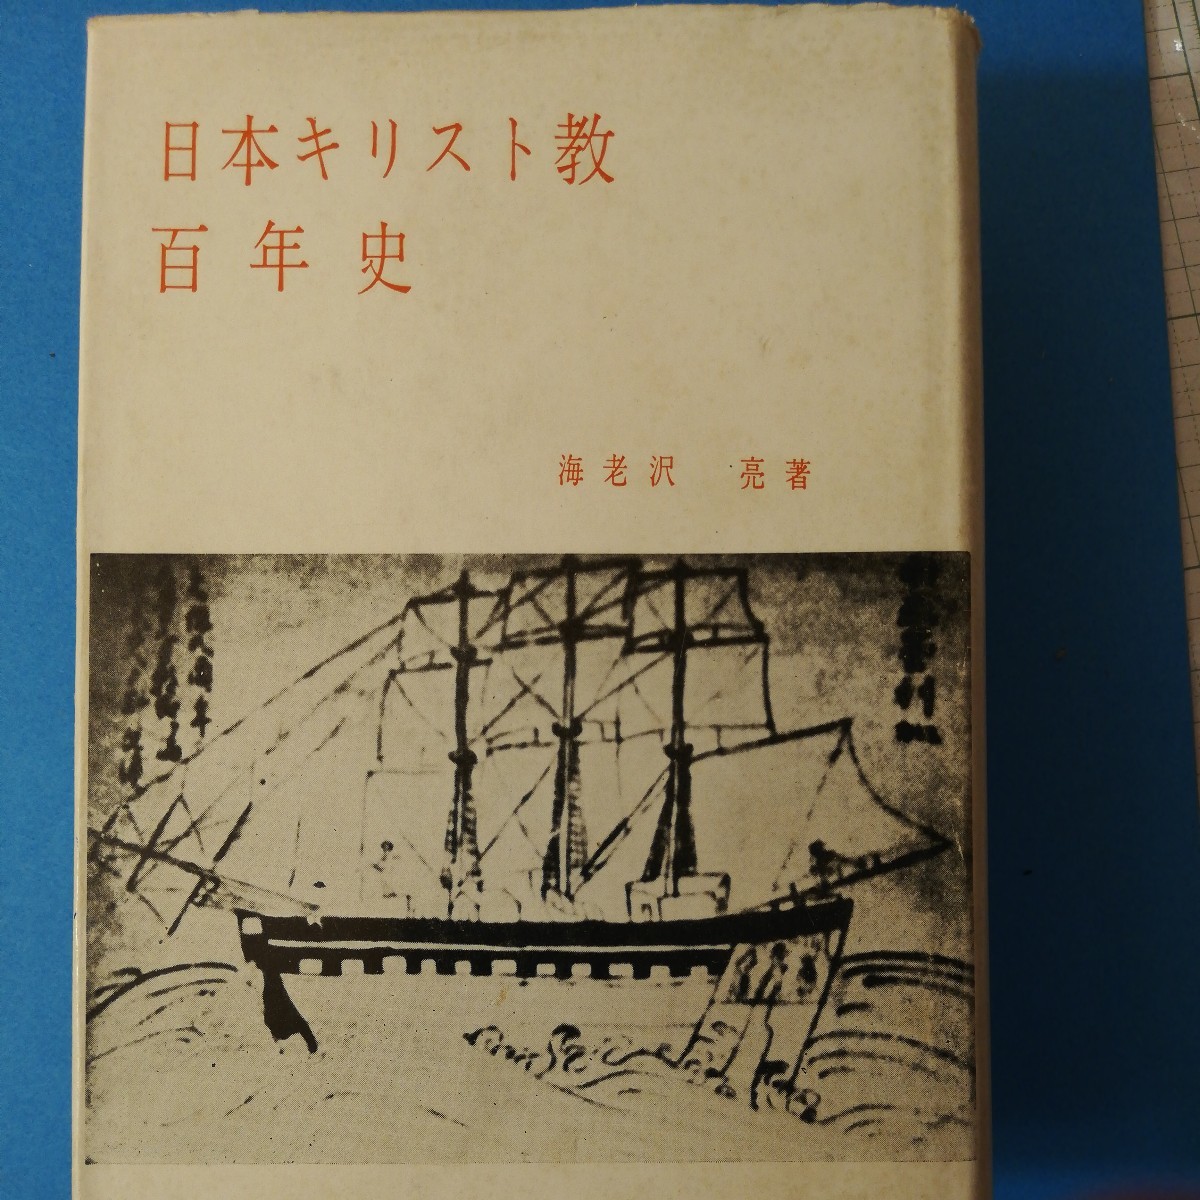  Япония христианство 100 год история (1959 год ) море ... 4 шесть штамп ③ полки 327